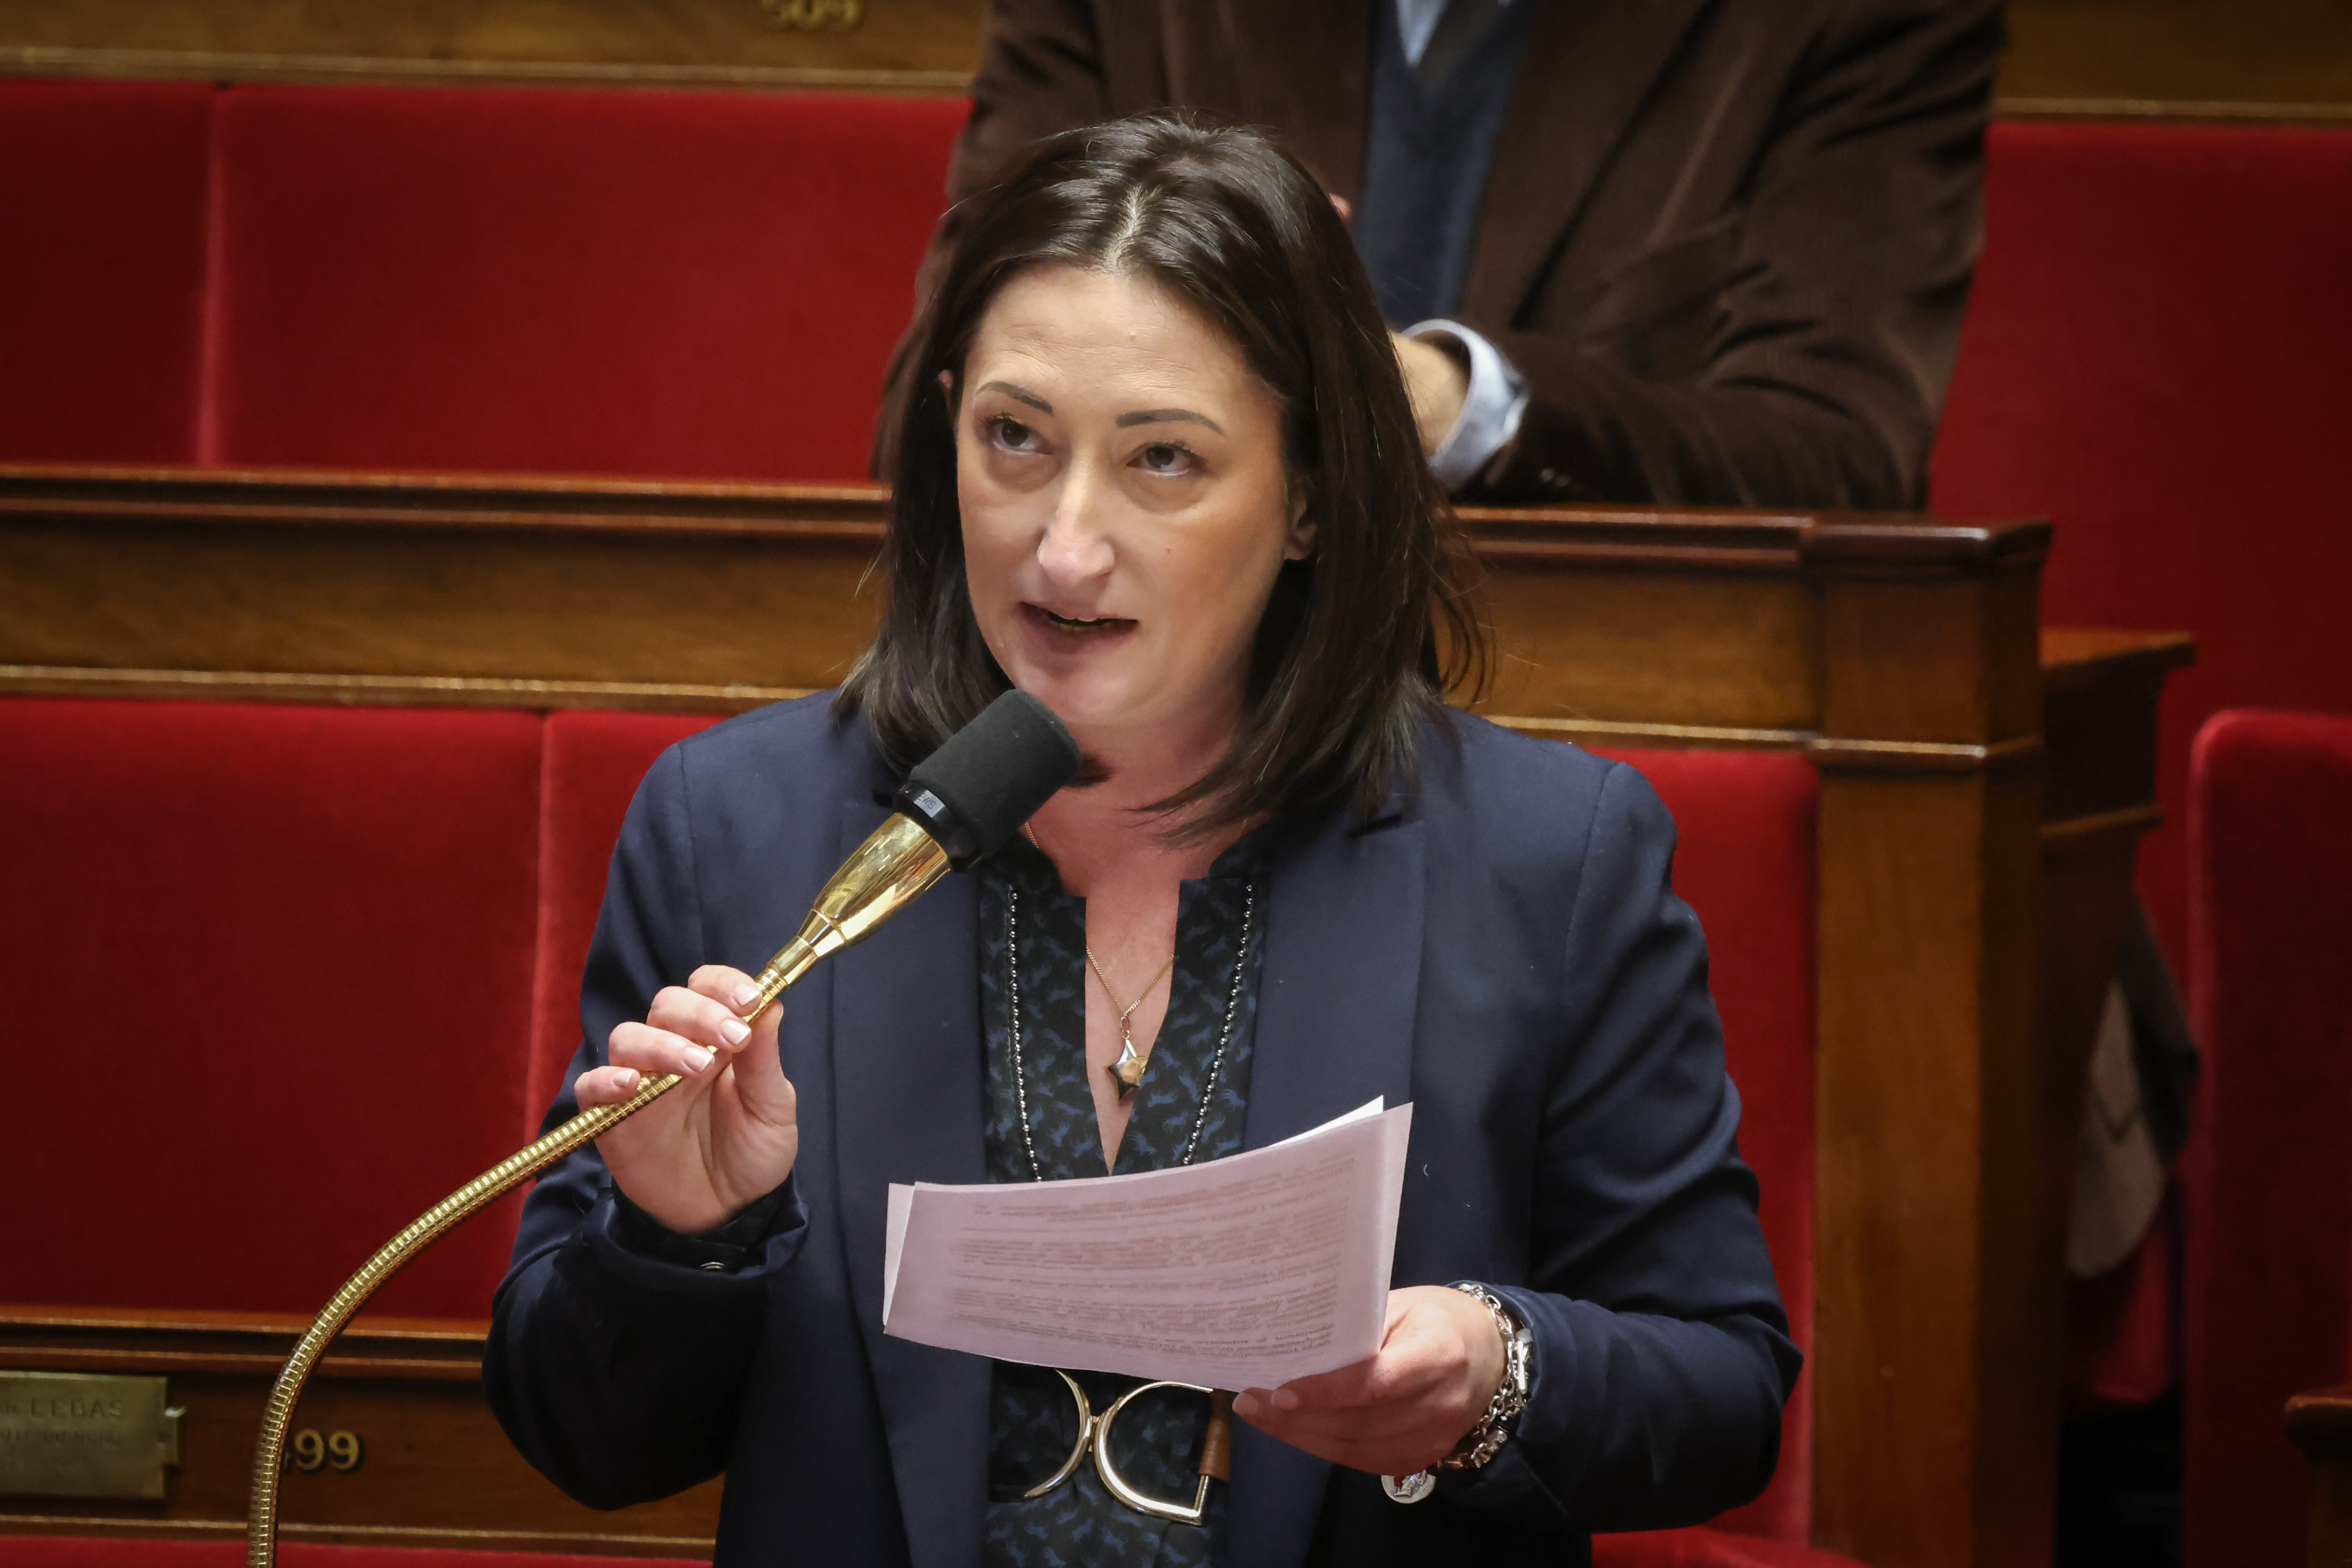 La députée EELV des Hauts-de-Seine Francesca Pasquini (ici en décembre 2022) défendra le 6 avril un projet de loi sur l'alimentation. LP/Fred Dugit